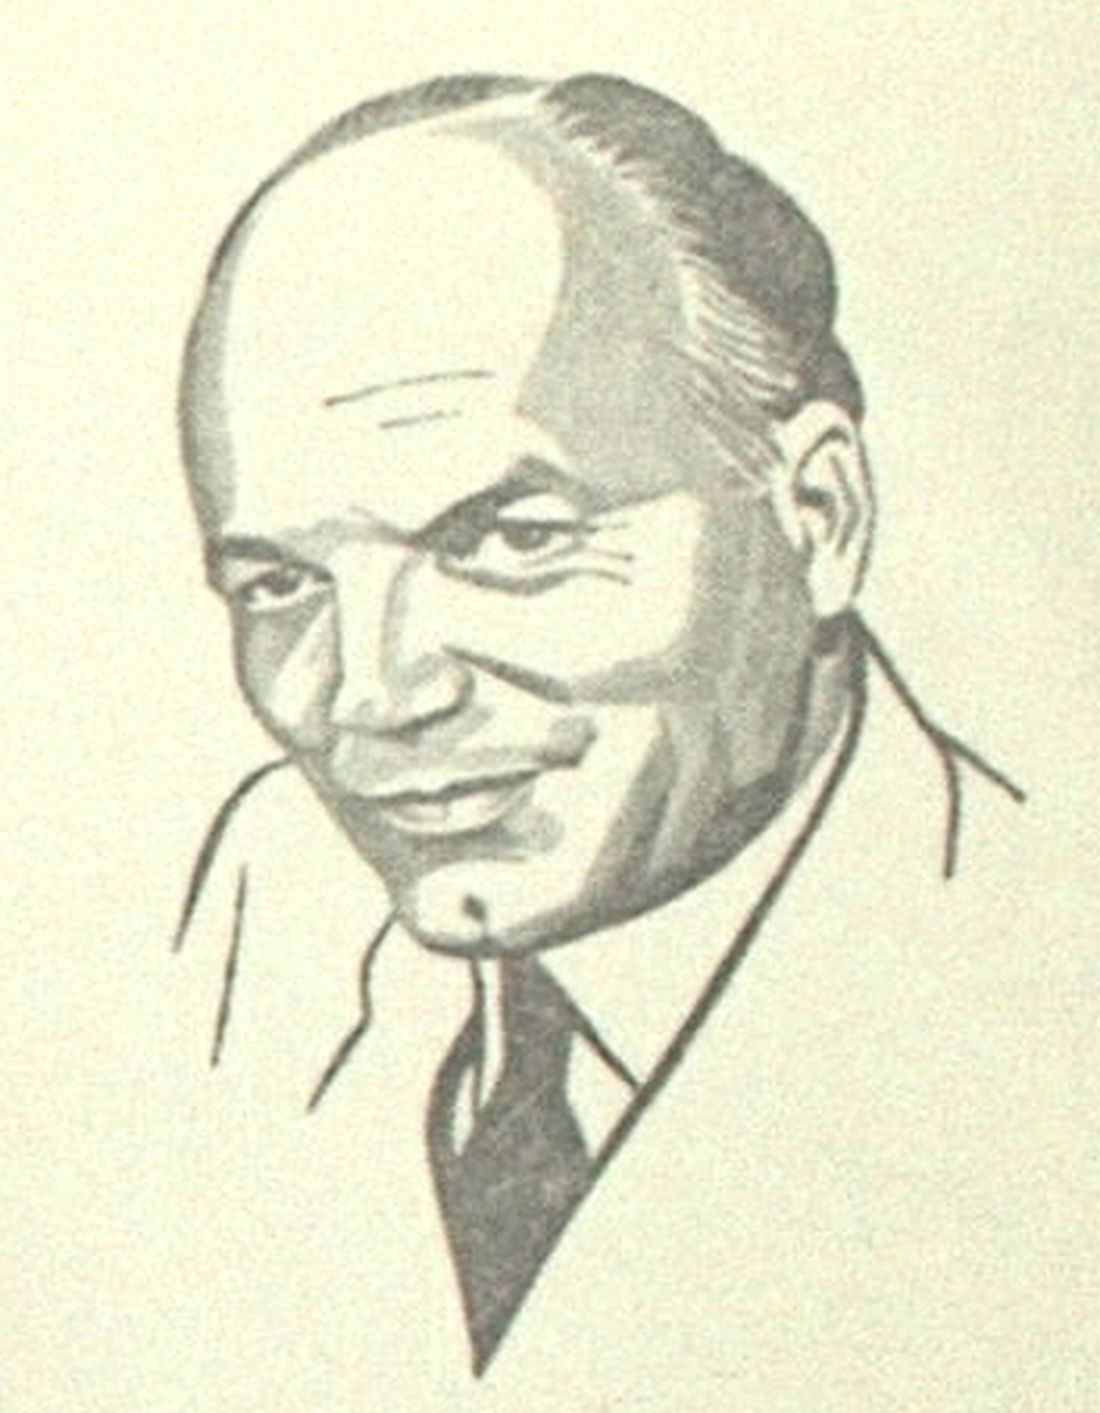 Fritz LEHMANN